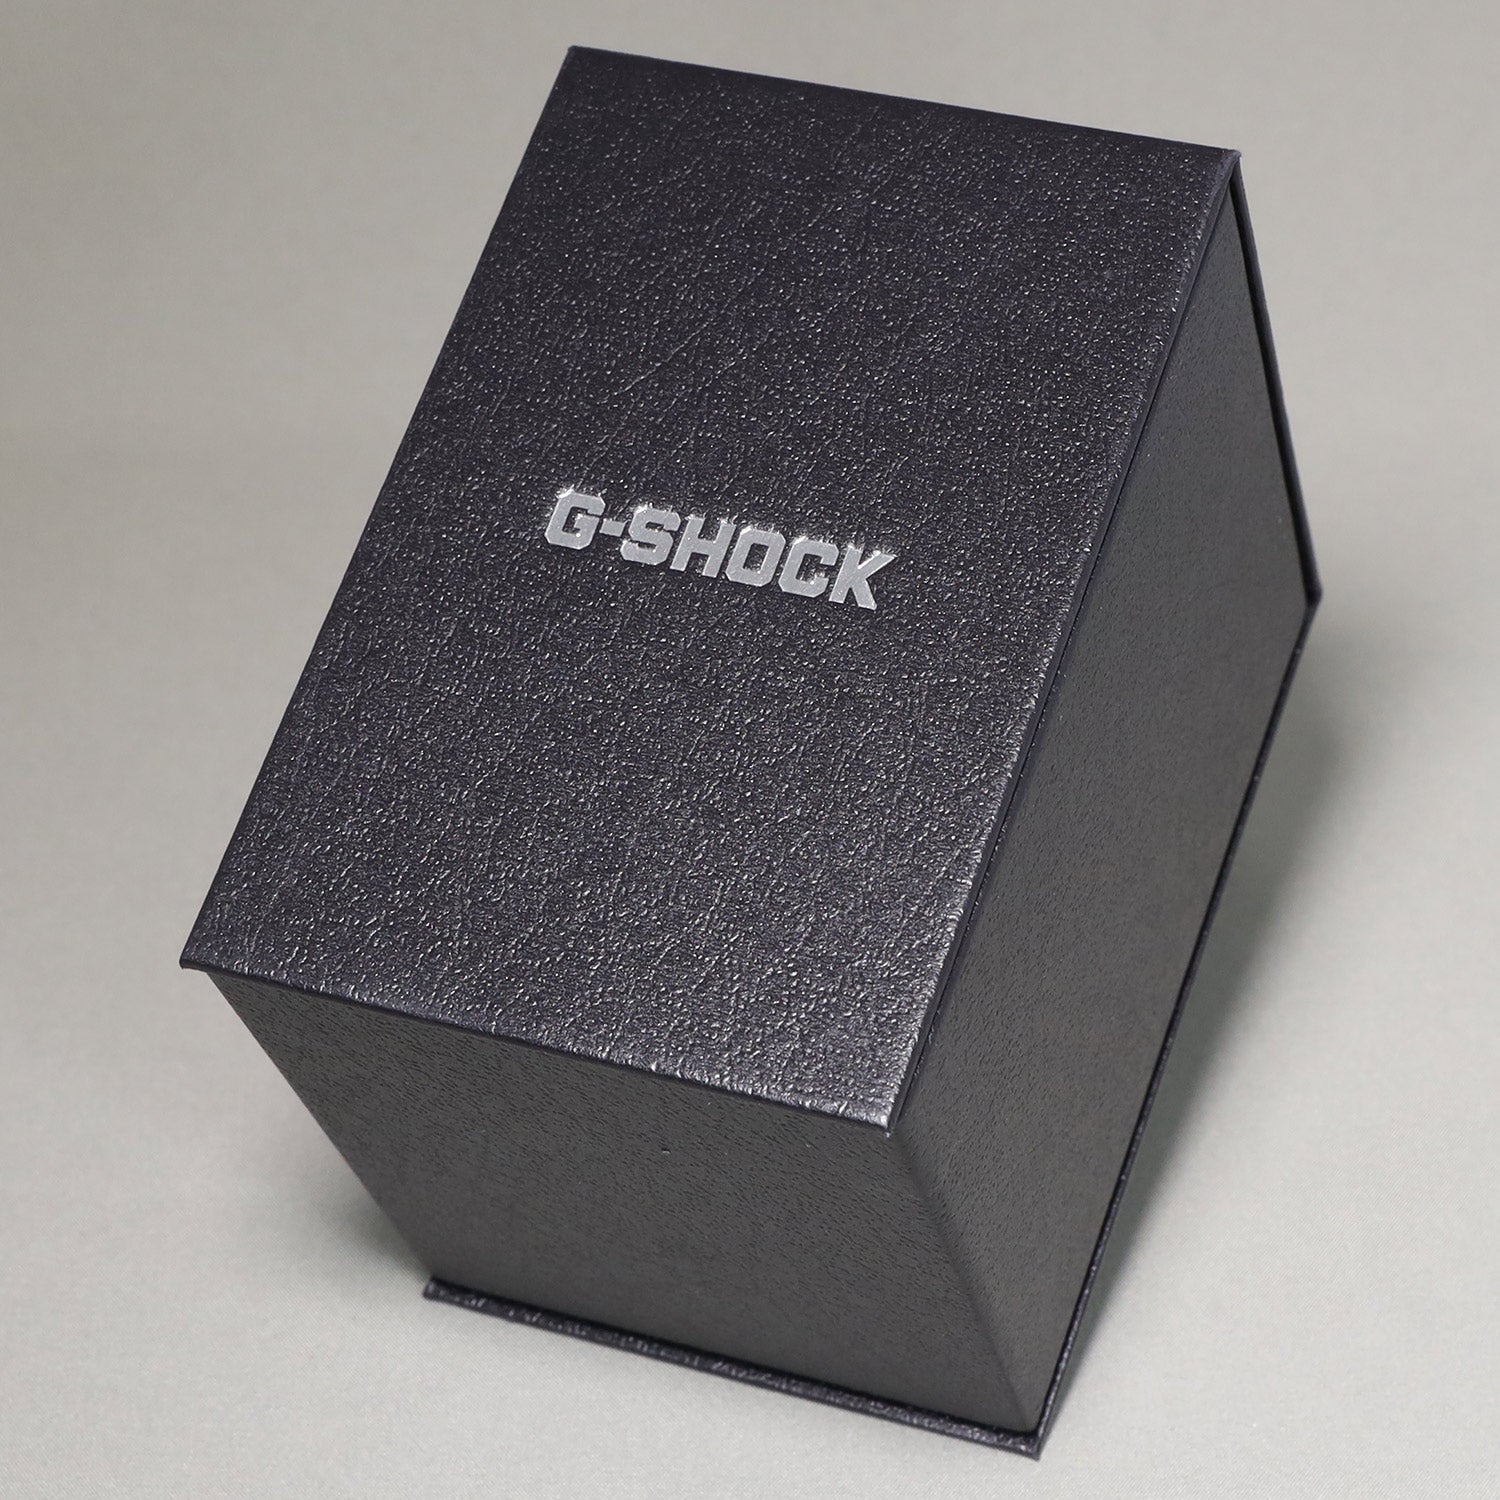 CASIO】G-SHOCK メタルベゼル / オクタゴンベゼル / GM-2100-1AJF